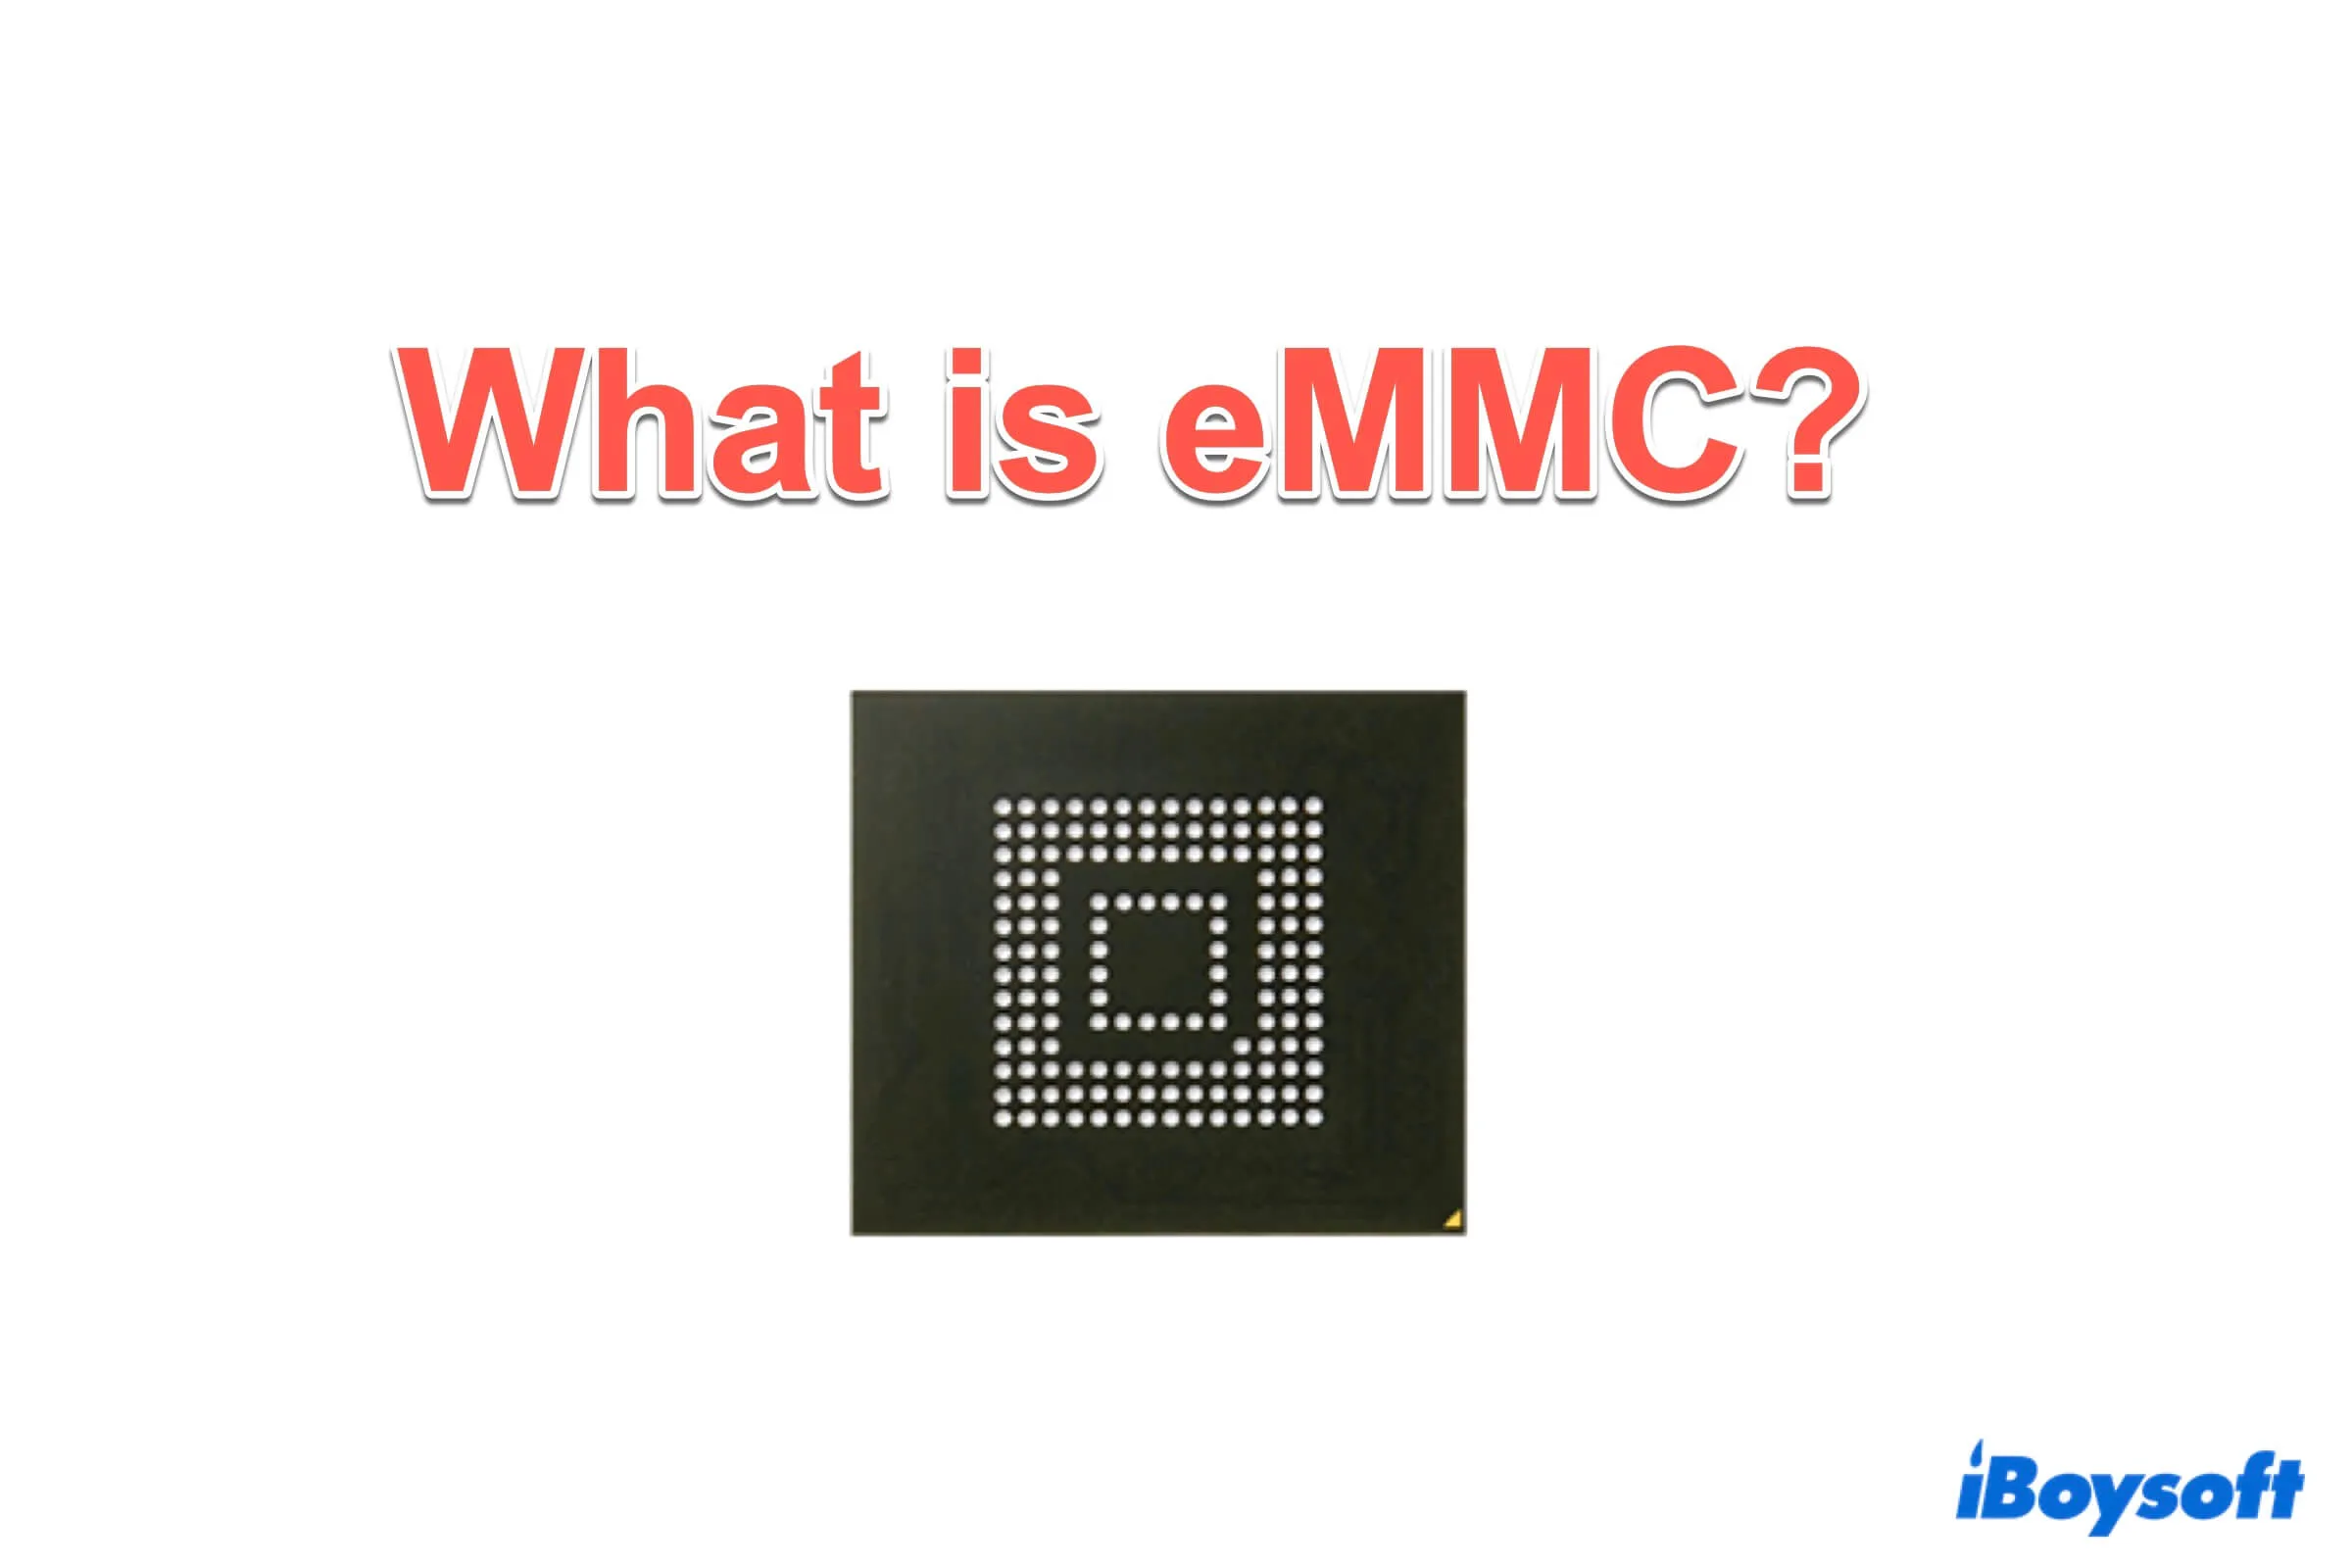 Summary of eMMC